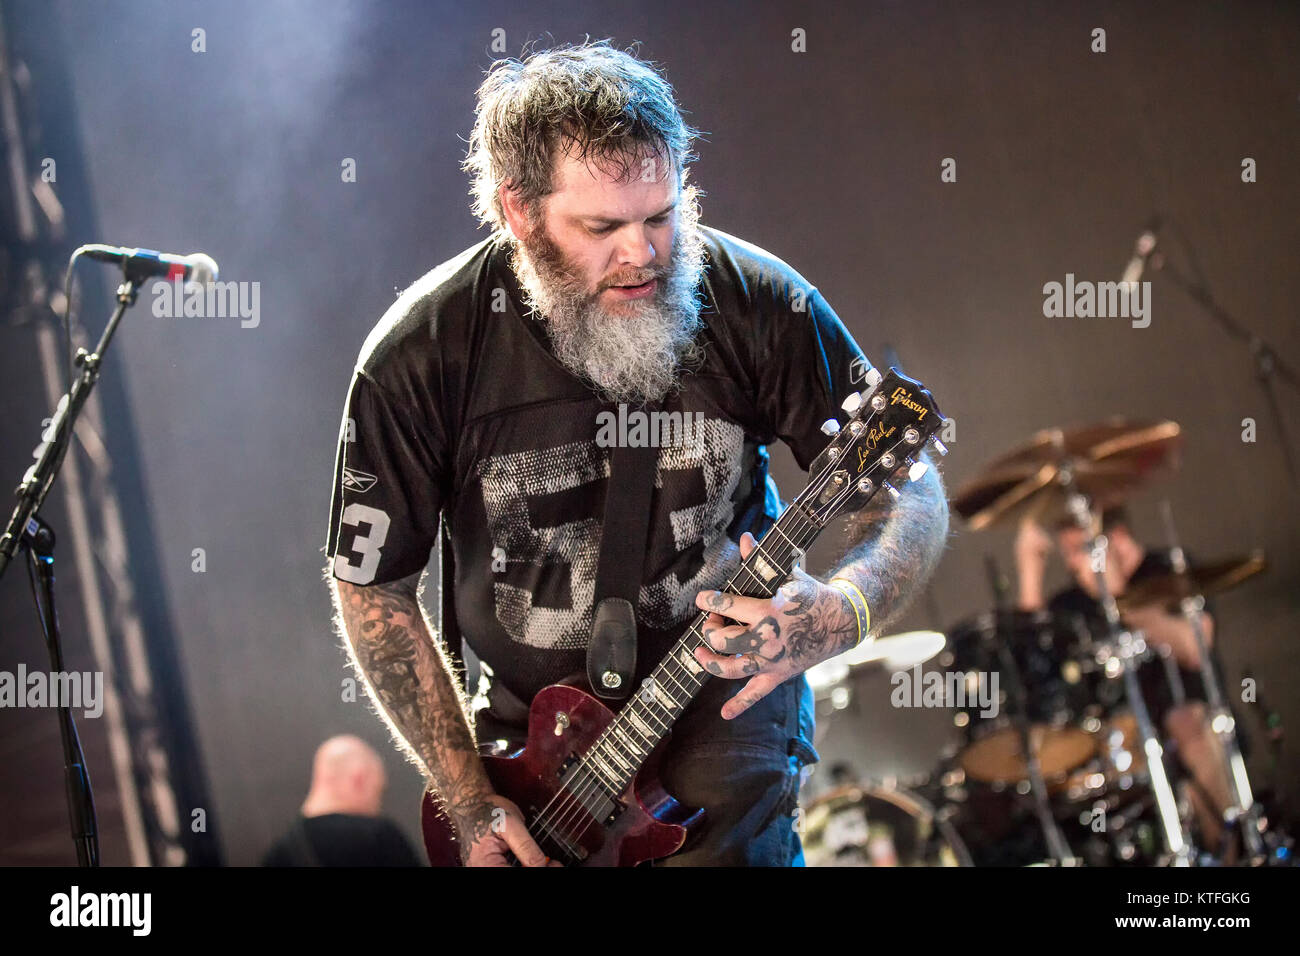 Die amerikanische nu-metal band Neurose führt ein Live Konzert in der norwegischen Musik Festival Øyafestivalen 2016 in Oslo. Hier Sänger und Gitarrist Scott Kelly ist sene live auf der Bühne. Norwegen, 13/08 2016. Stockfoto